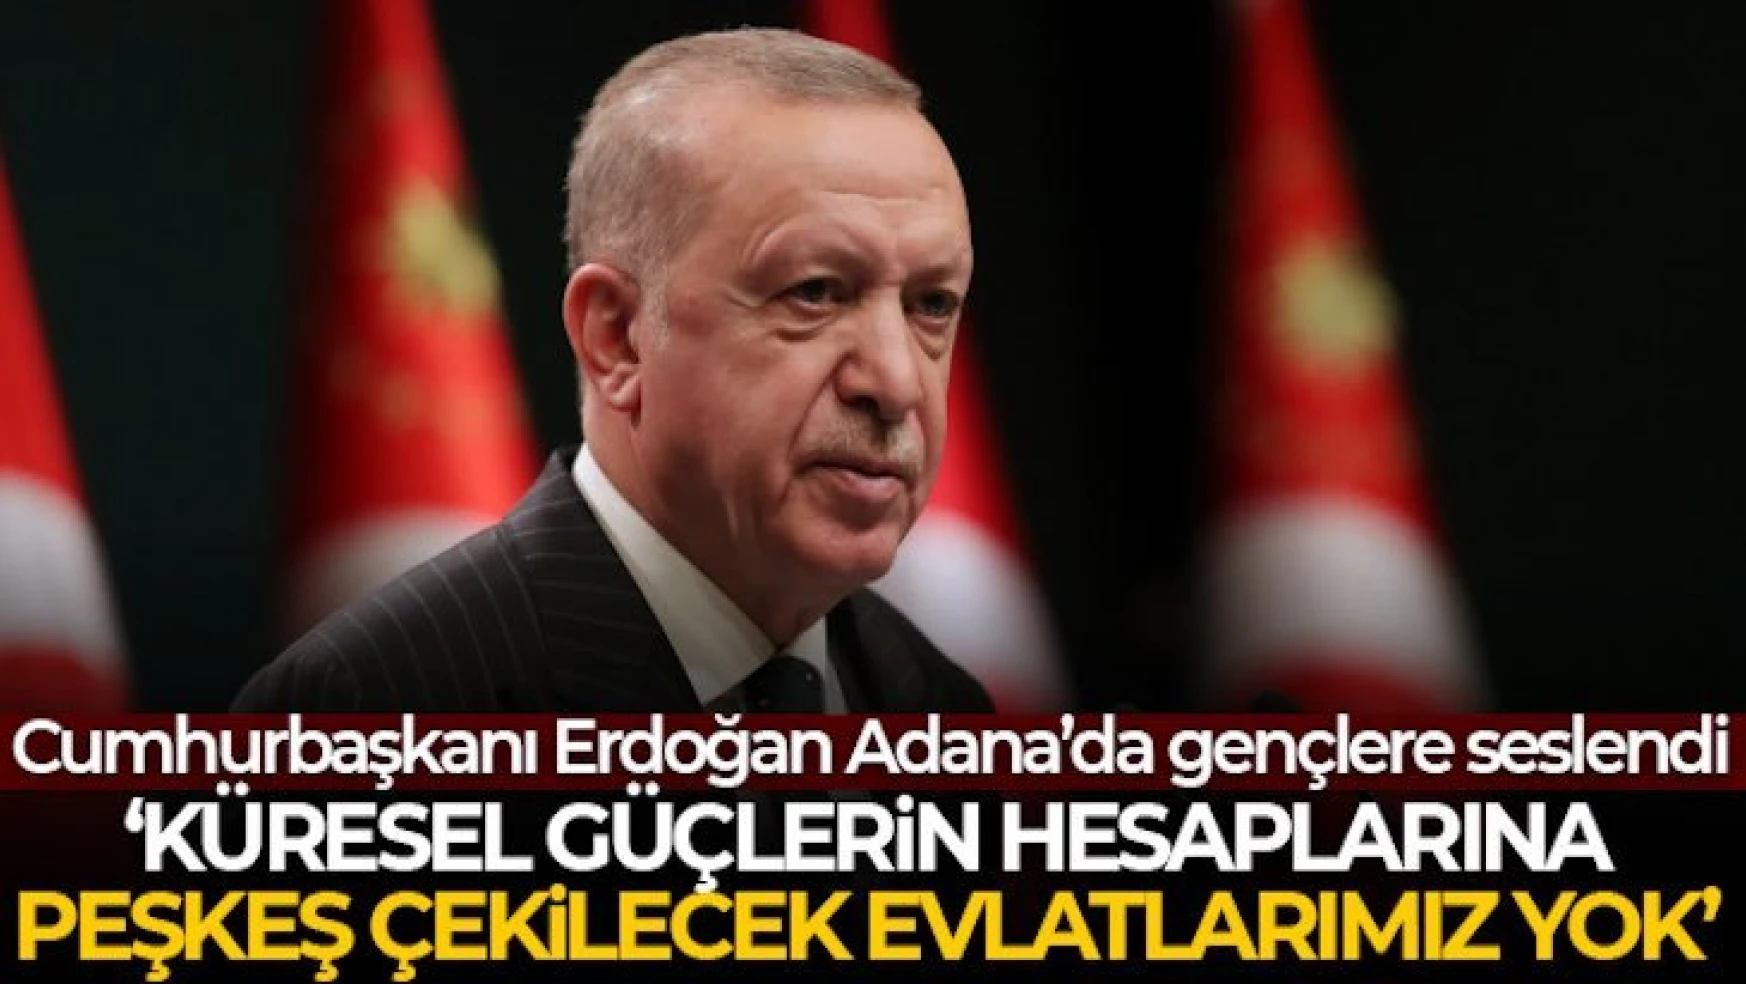 Erdoğan: Küresel güçlerin hesaplarına peşkeş çekilecek evladımız yok